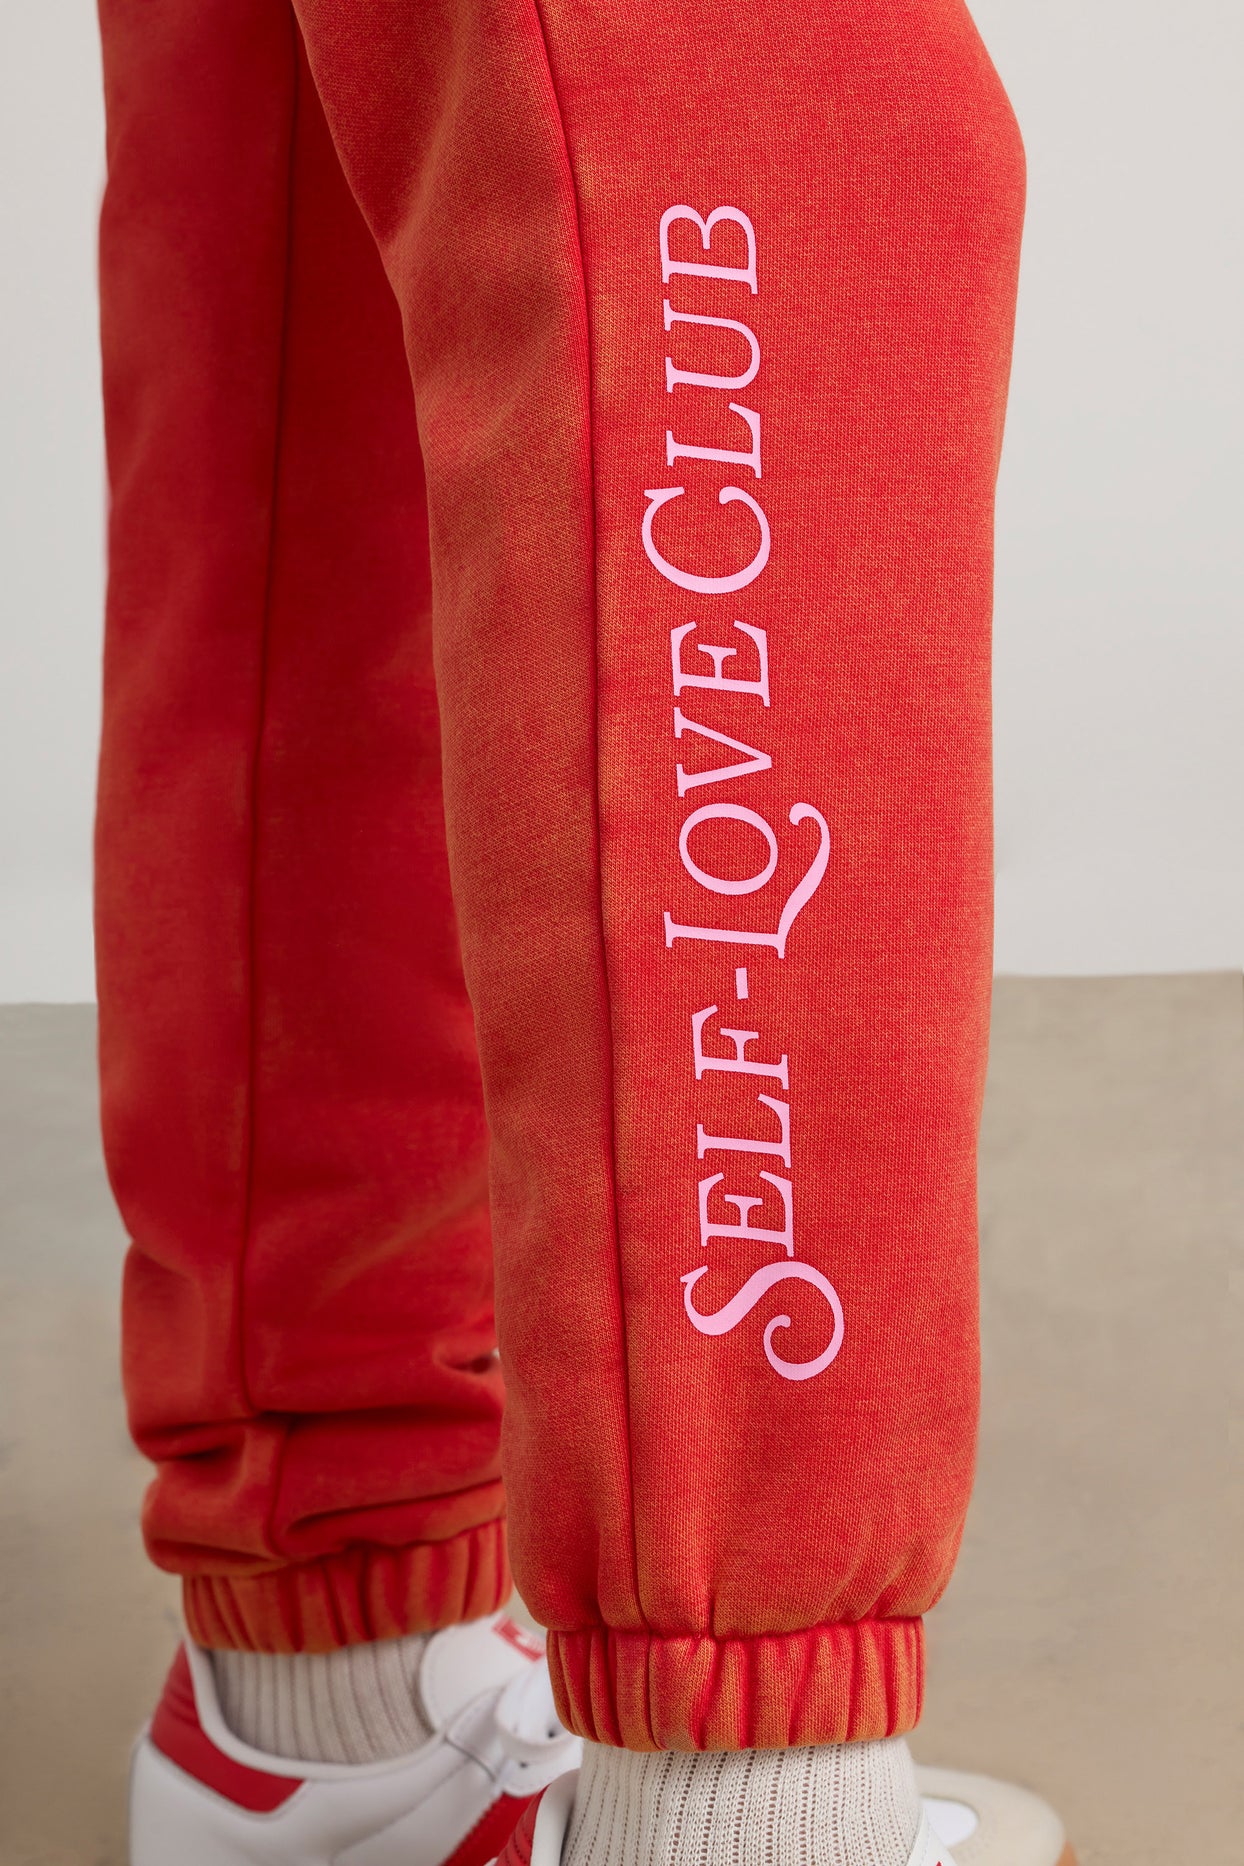 Pantalon de jogging surdimensionné en rouge